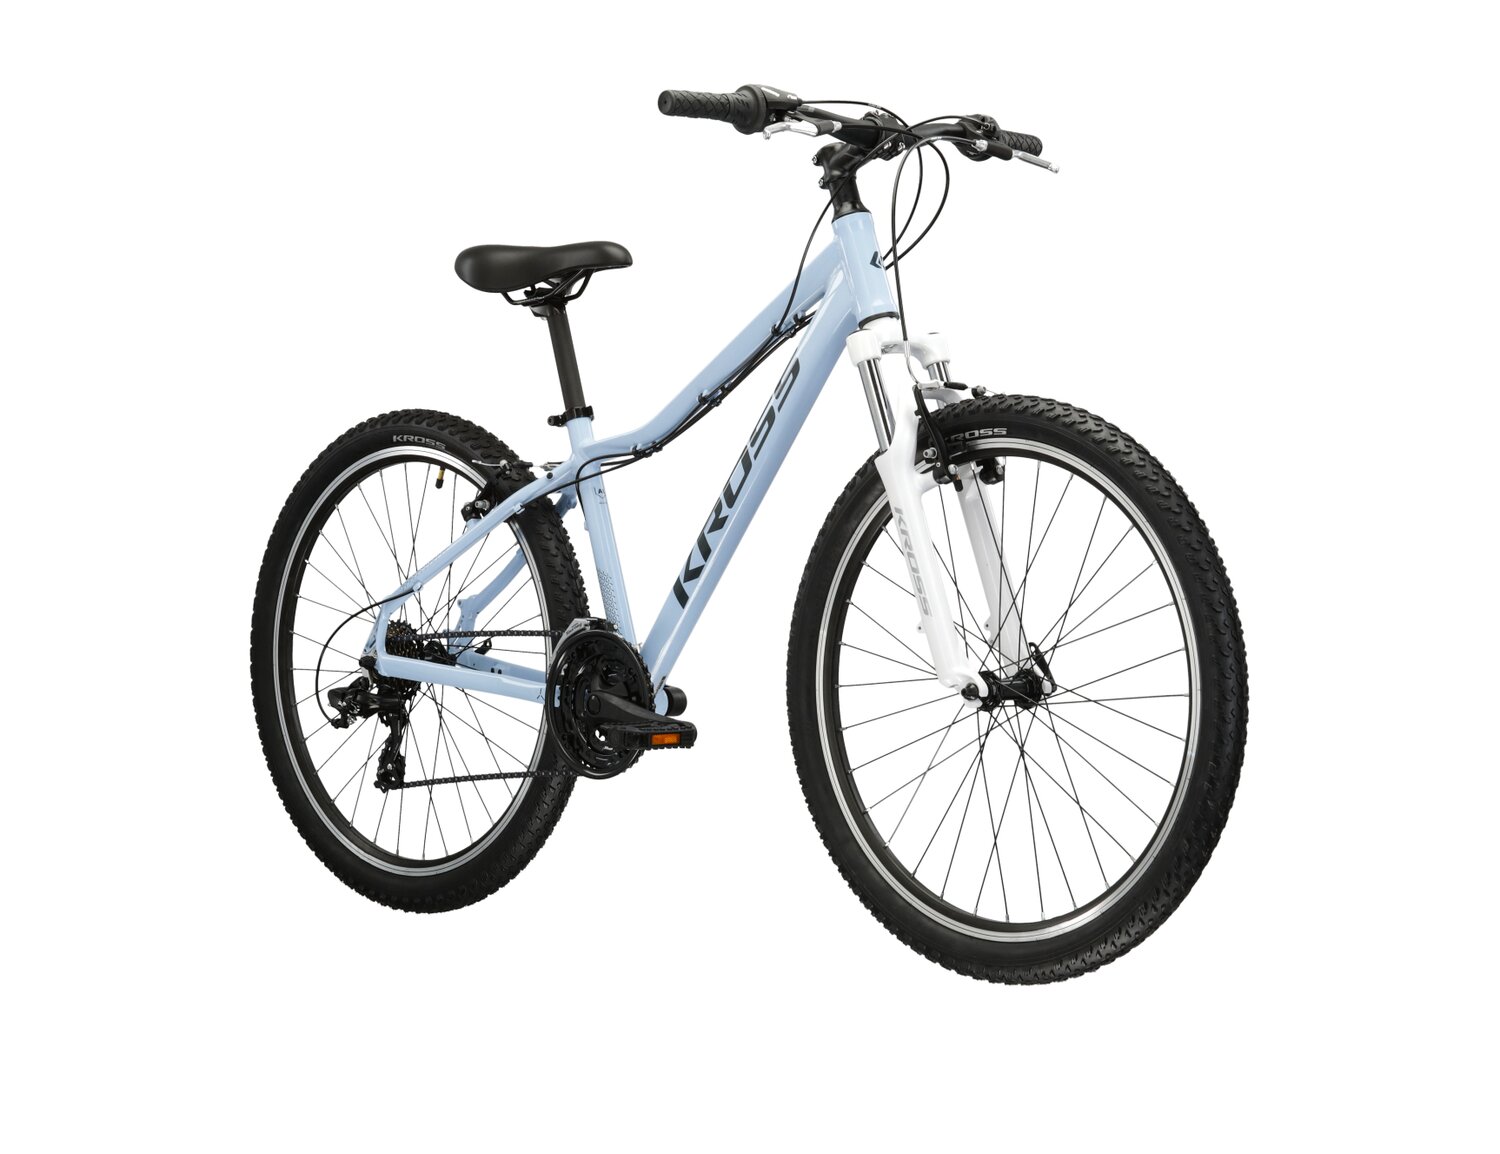 Damski rower górski MTB Woman Kross Lea 1.0 na aluminiowej ramie w kolorze błękitnym wyposażony w osprzęt Shimano 